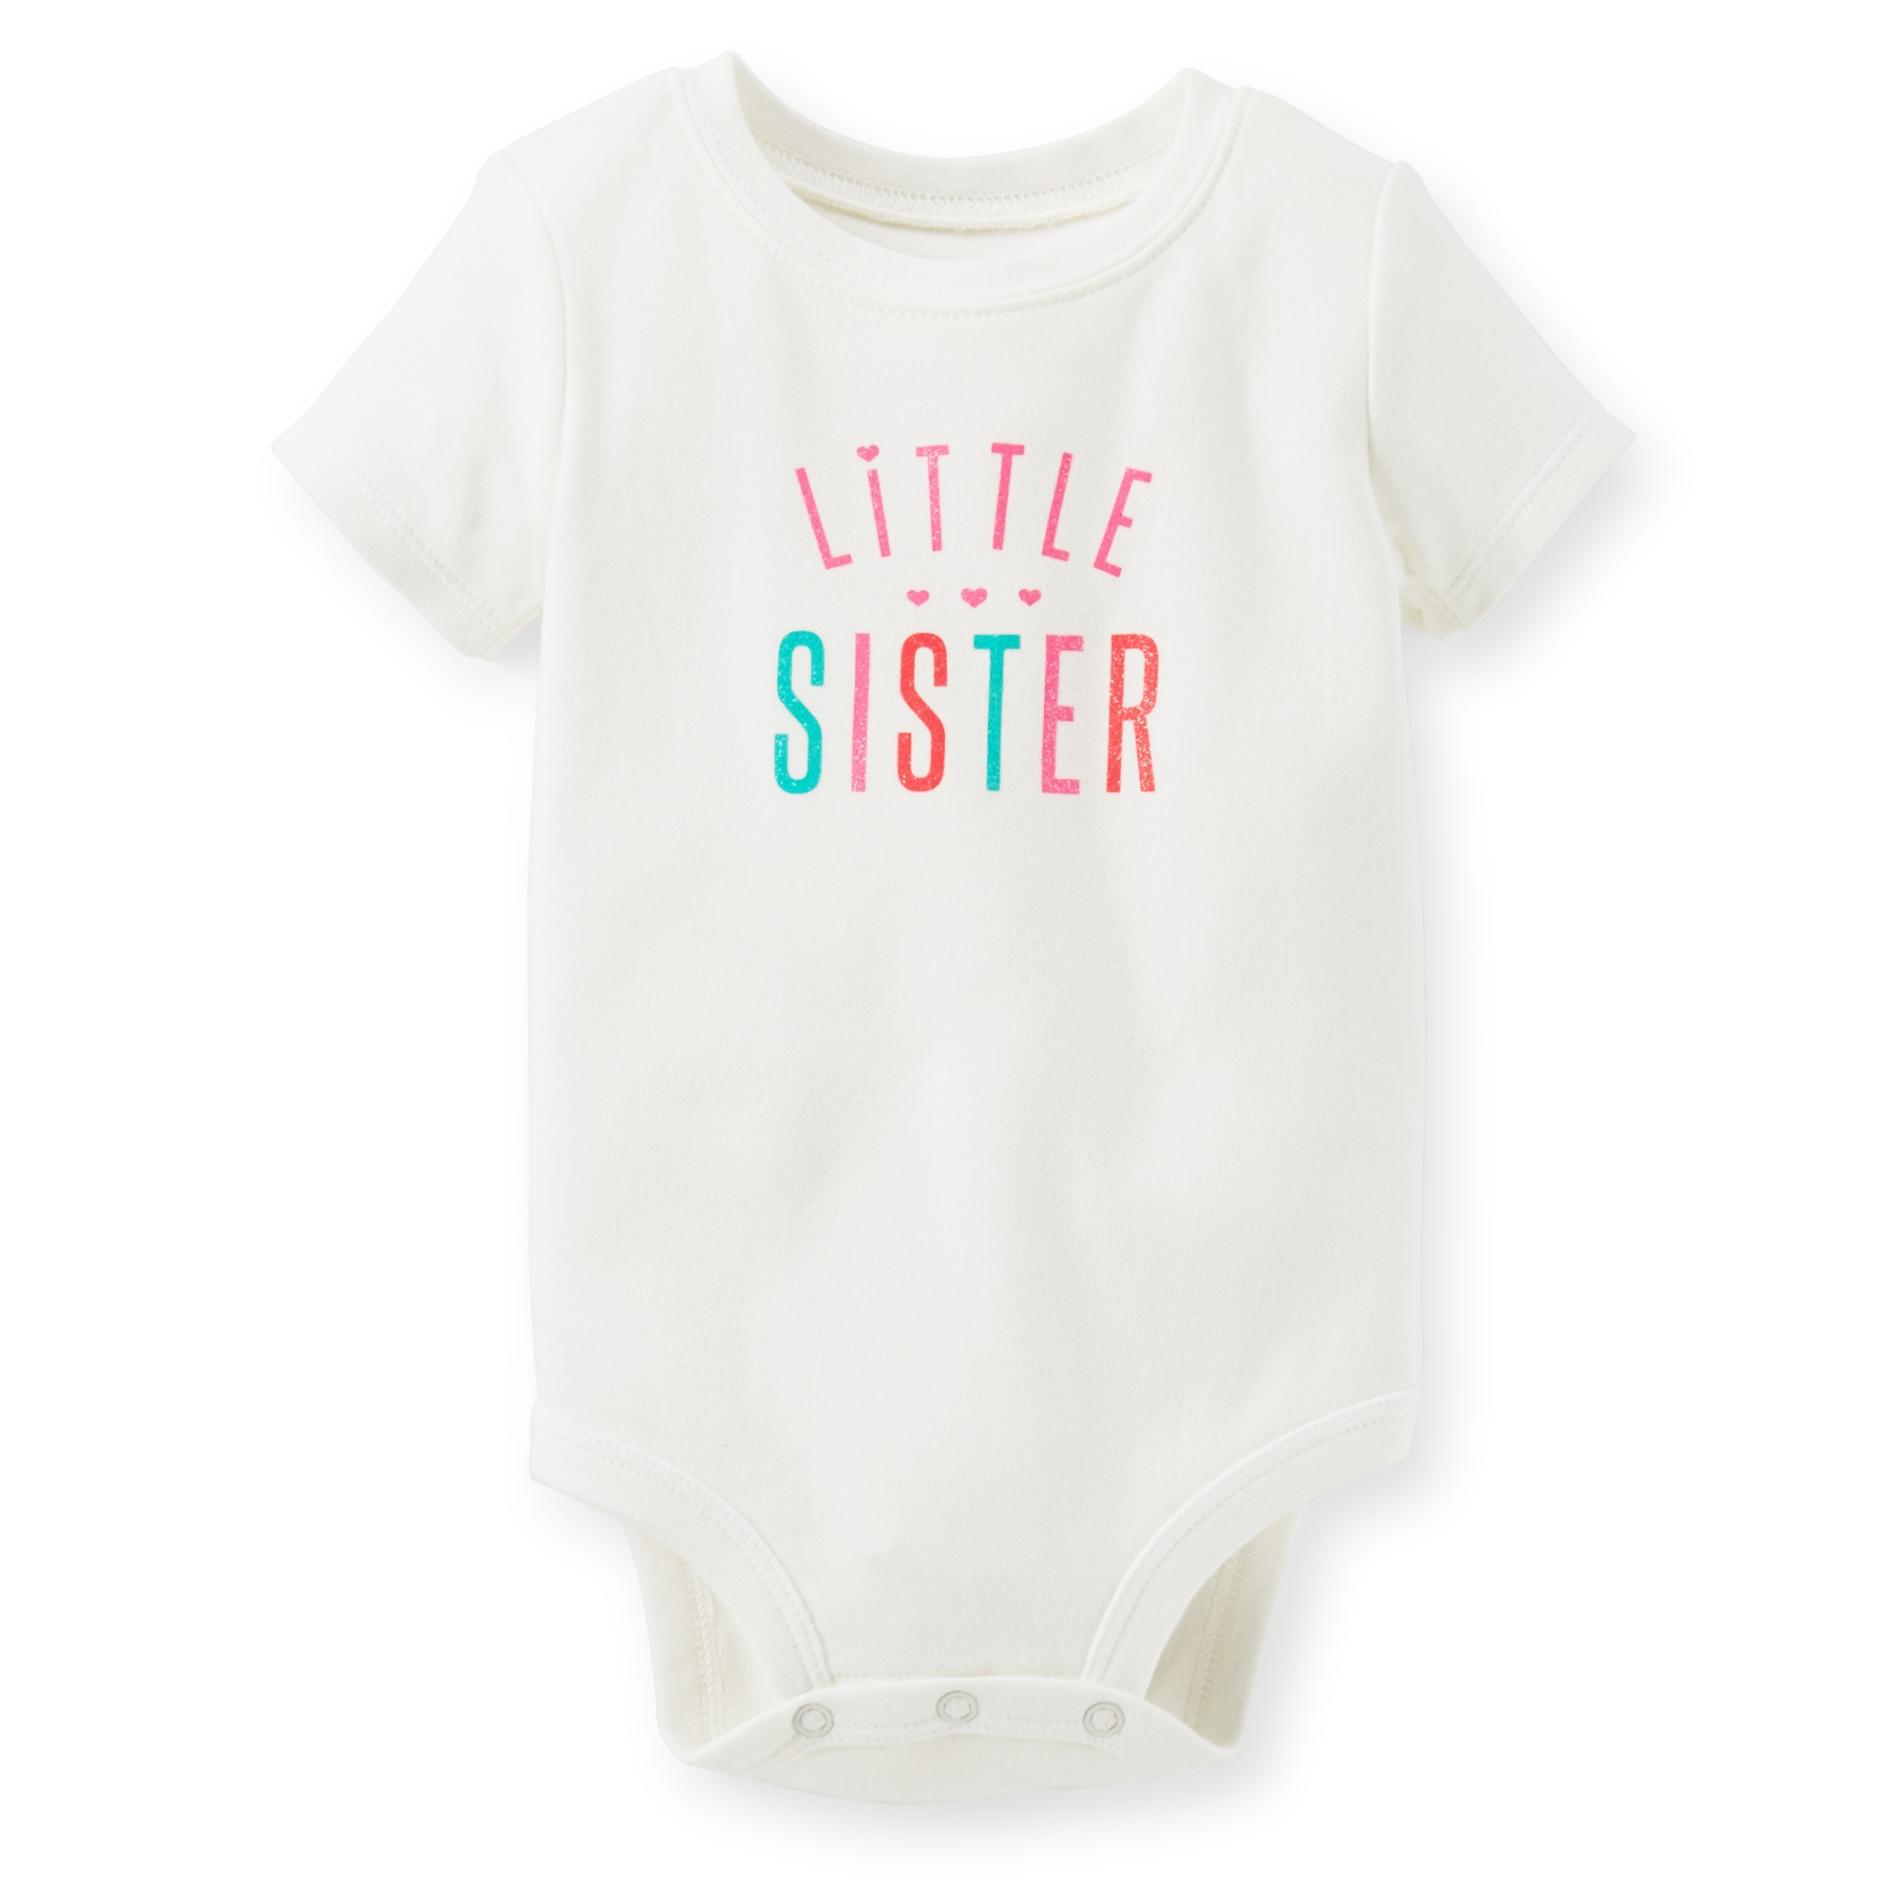 Carter's Newborn & Infant Girl's Short-Sleeve Bodysuit - Little Sister